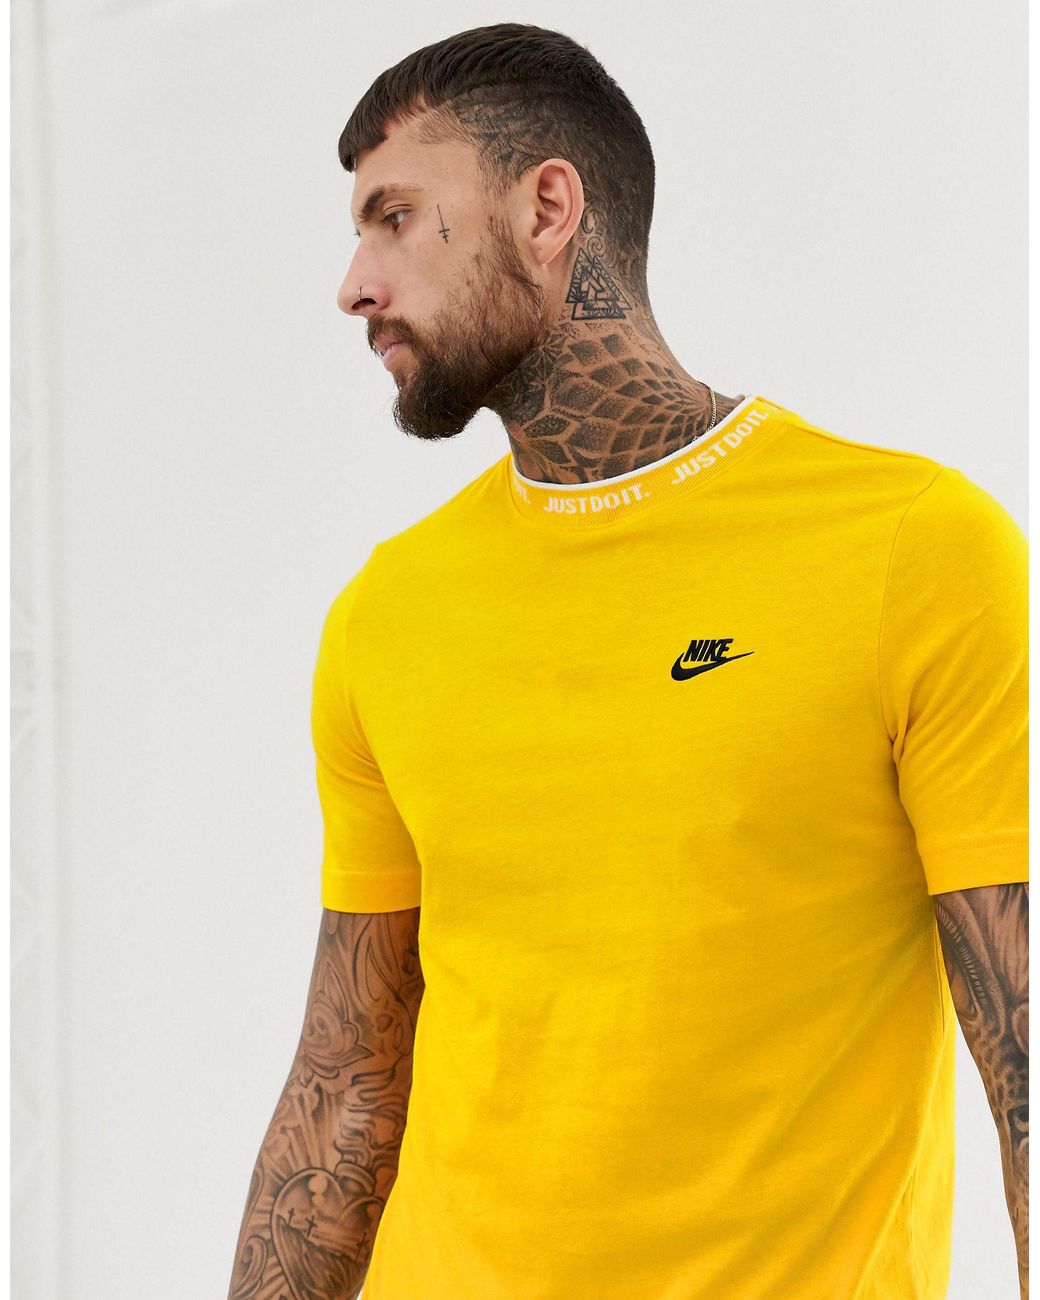 grieta Admirable Limpia el cuarto Camiseta amarilla con logo just do it Nike de hombre de color Amarillo |  Lyst